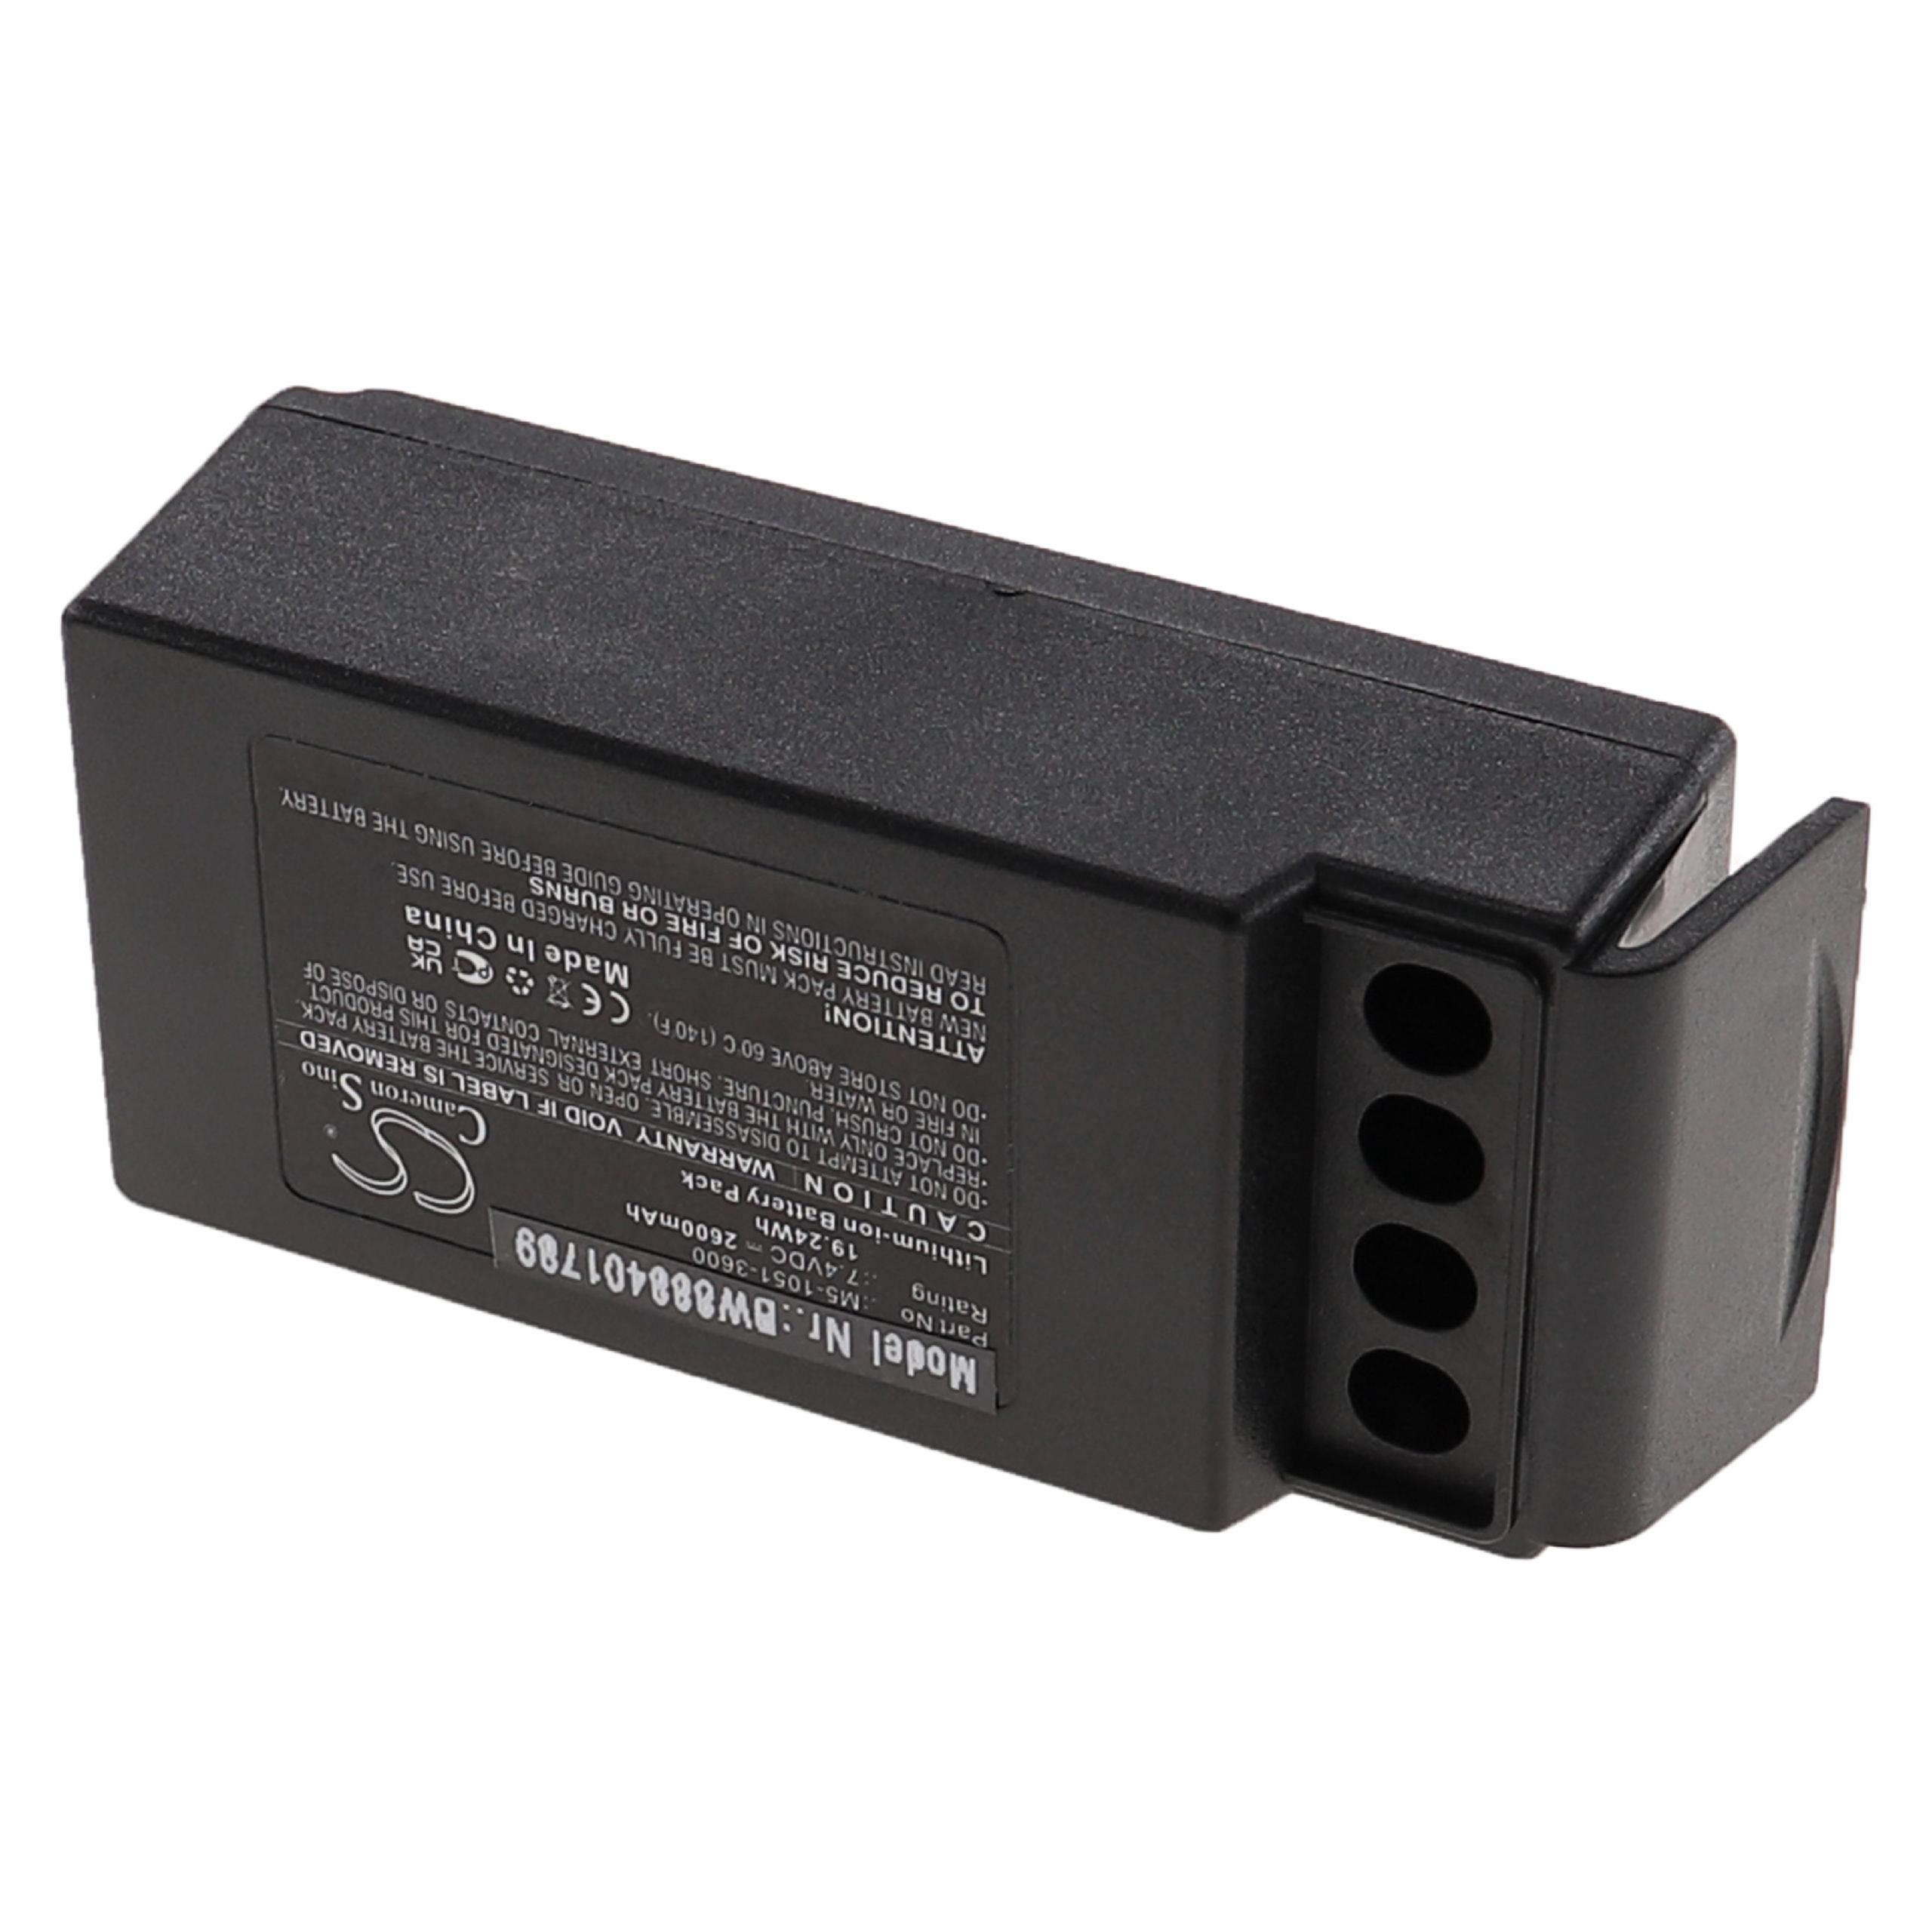 Batterie remplace Cavotec M5-1051-3600 pour télécomande industrielle - 2600mAh 7,4V Li-ion